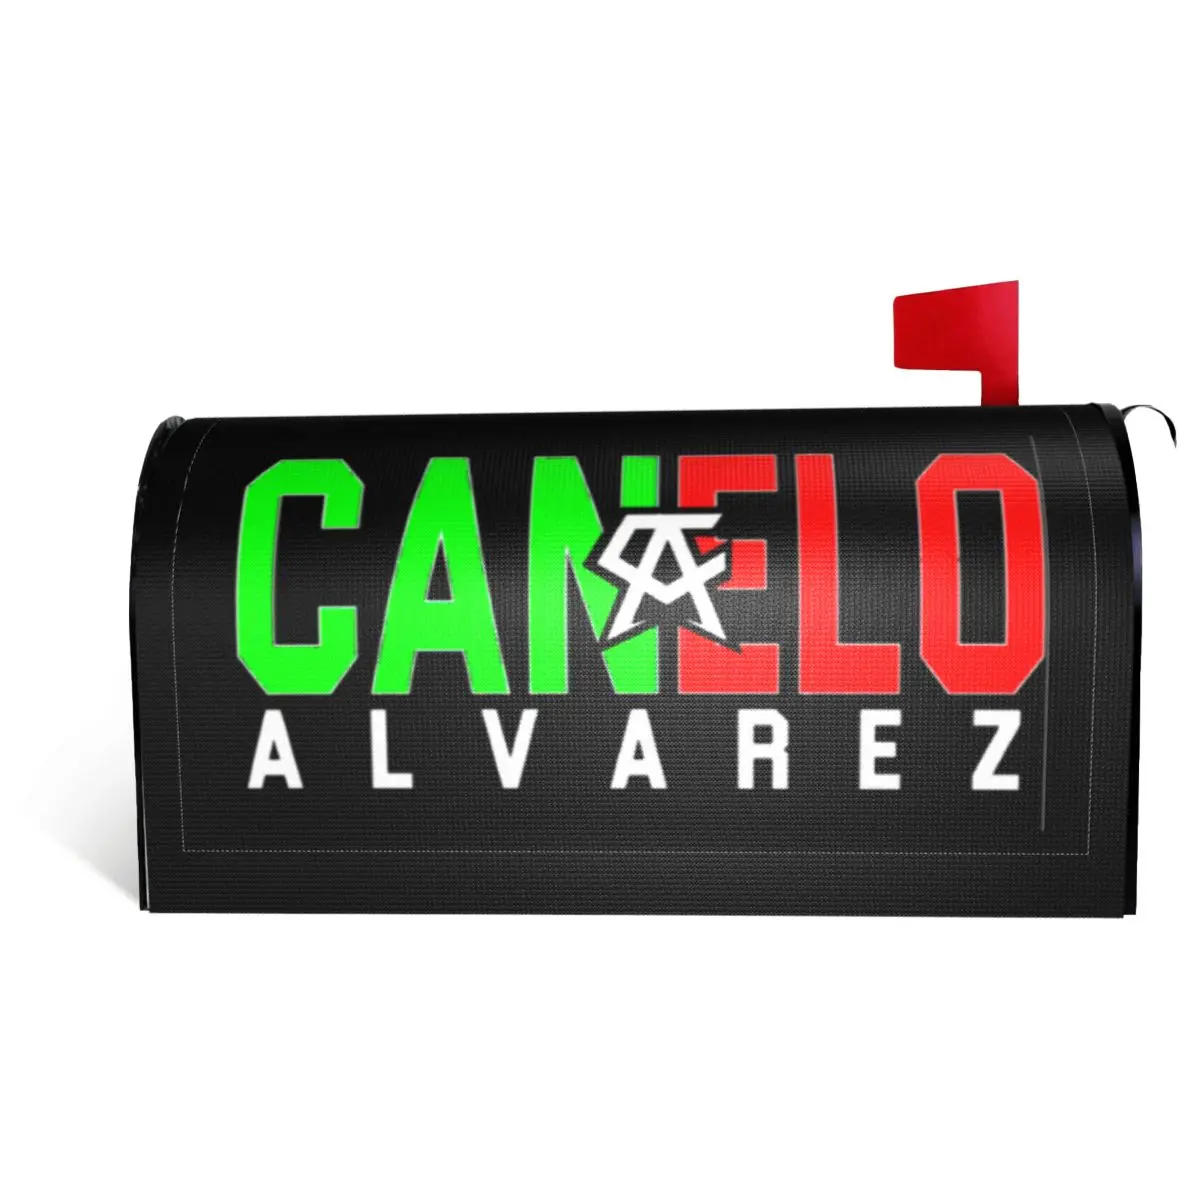 

Canelos Alvarez Essential 4 Mailbox Cover Funny Graphic Postbox Cool R257 correspondence